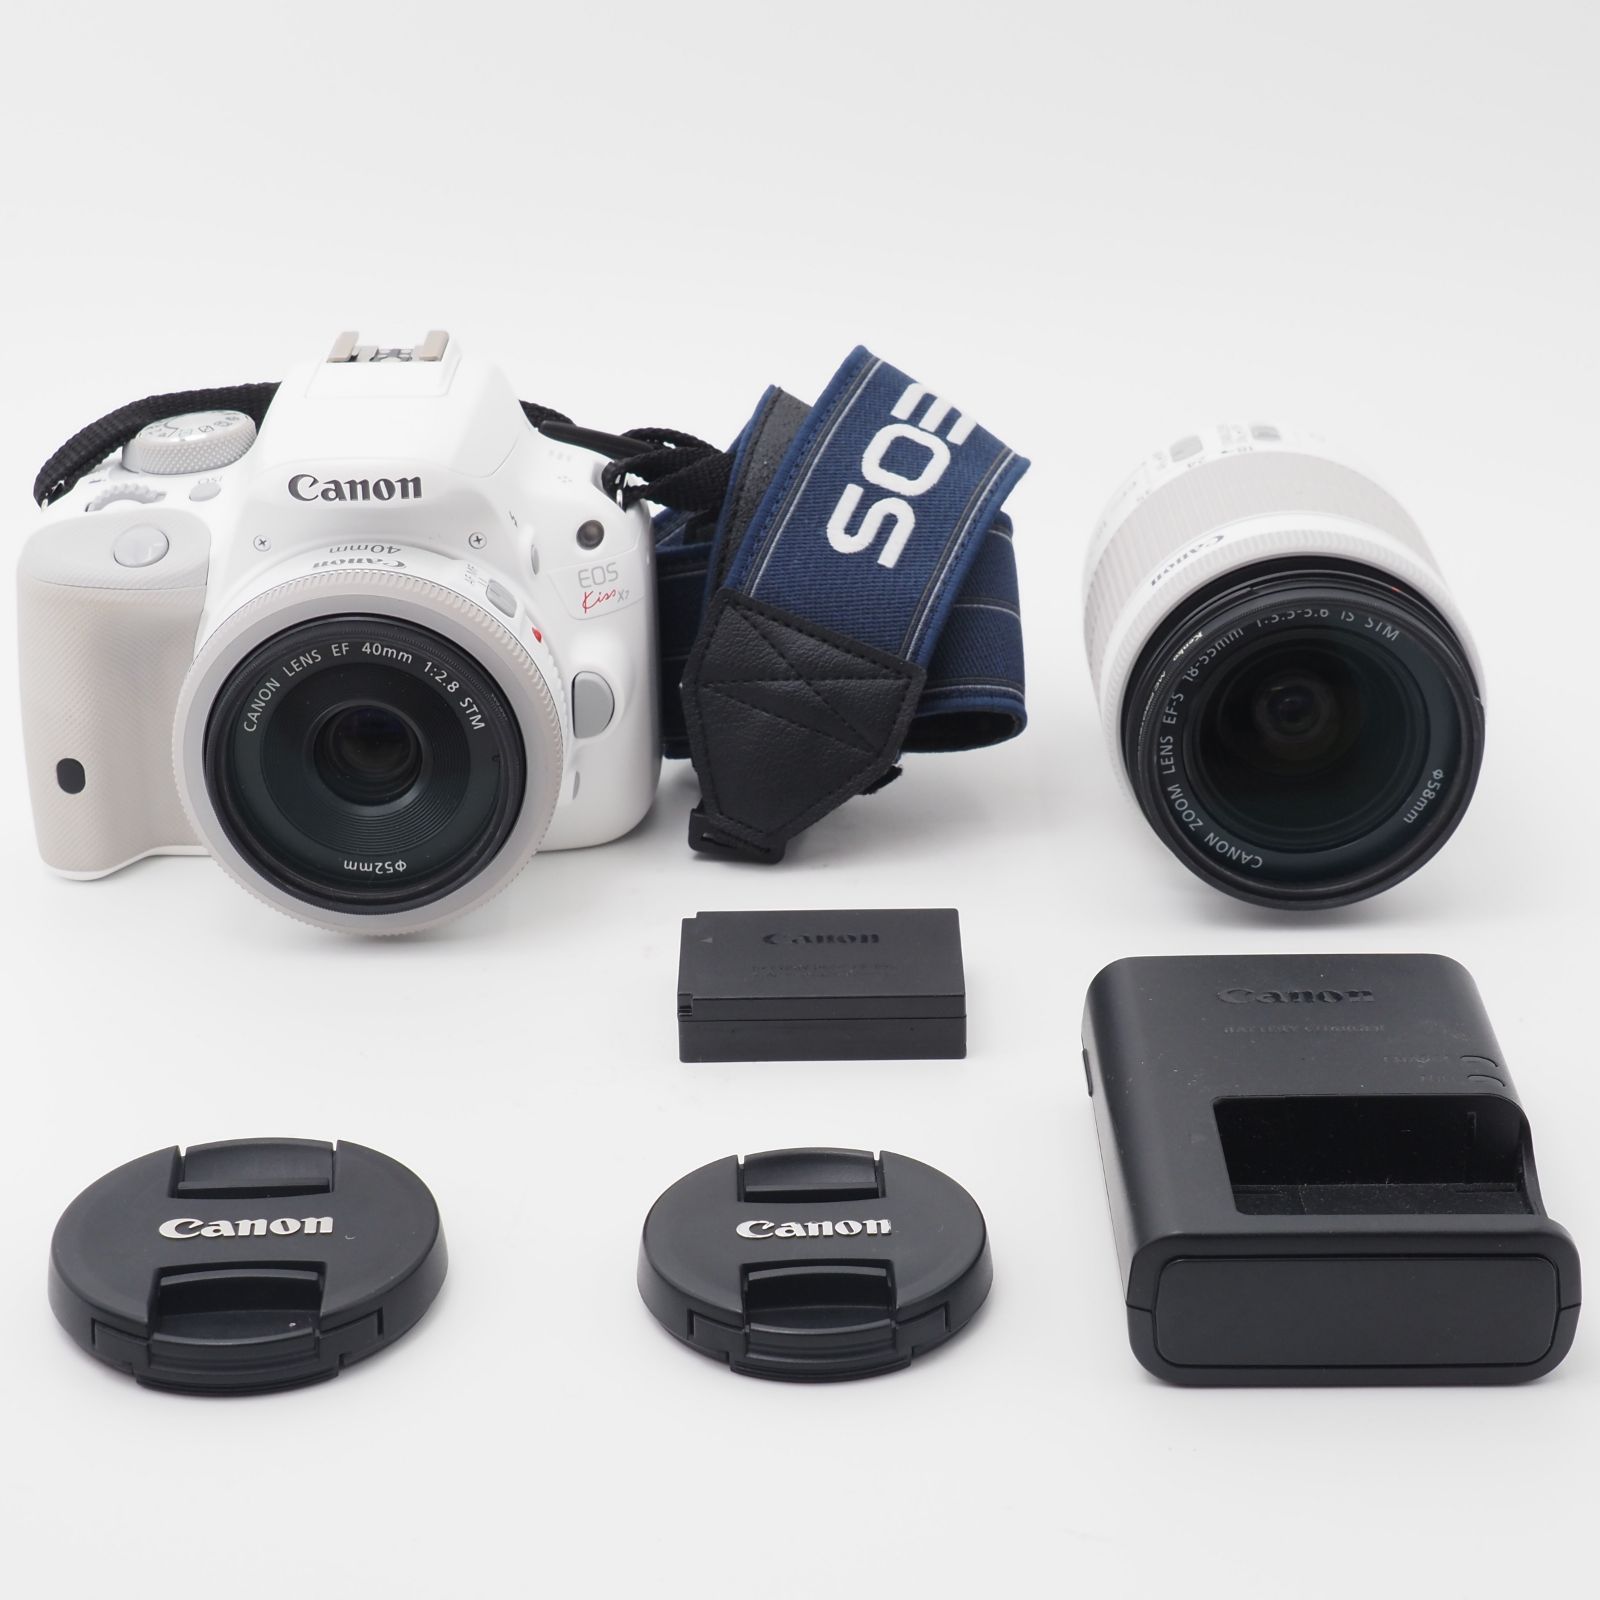 101350☆ほぼ新☆Canon デジタル一眼レフカメラ EOS Kiss X7(ホワイト) ダブルレンズキット2 EF-S18-55mm F3. 5-5.6 IS STM(ホワイト) EF40mm F2.8 STM(ホワイト) 付属 KISSX7WH-WLK2 SUNBRIGHT株式会社  メルカリ